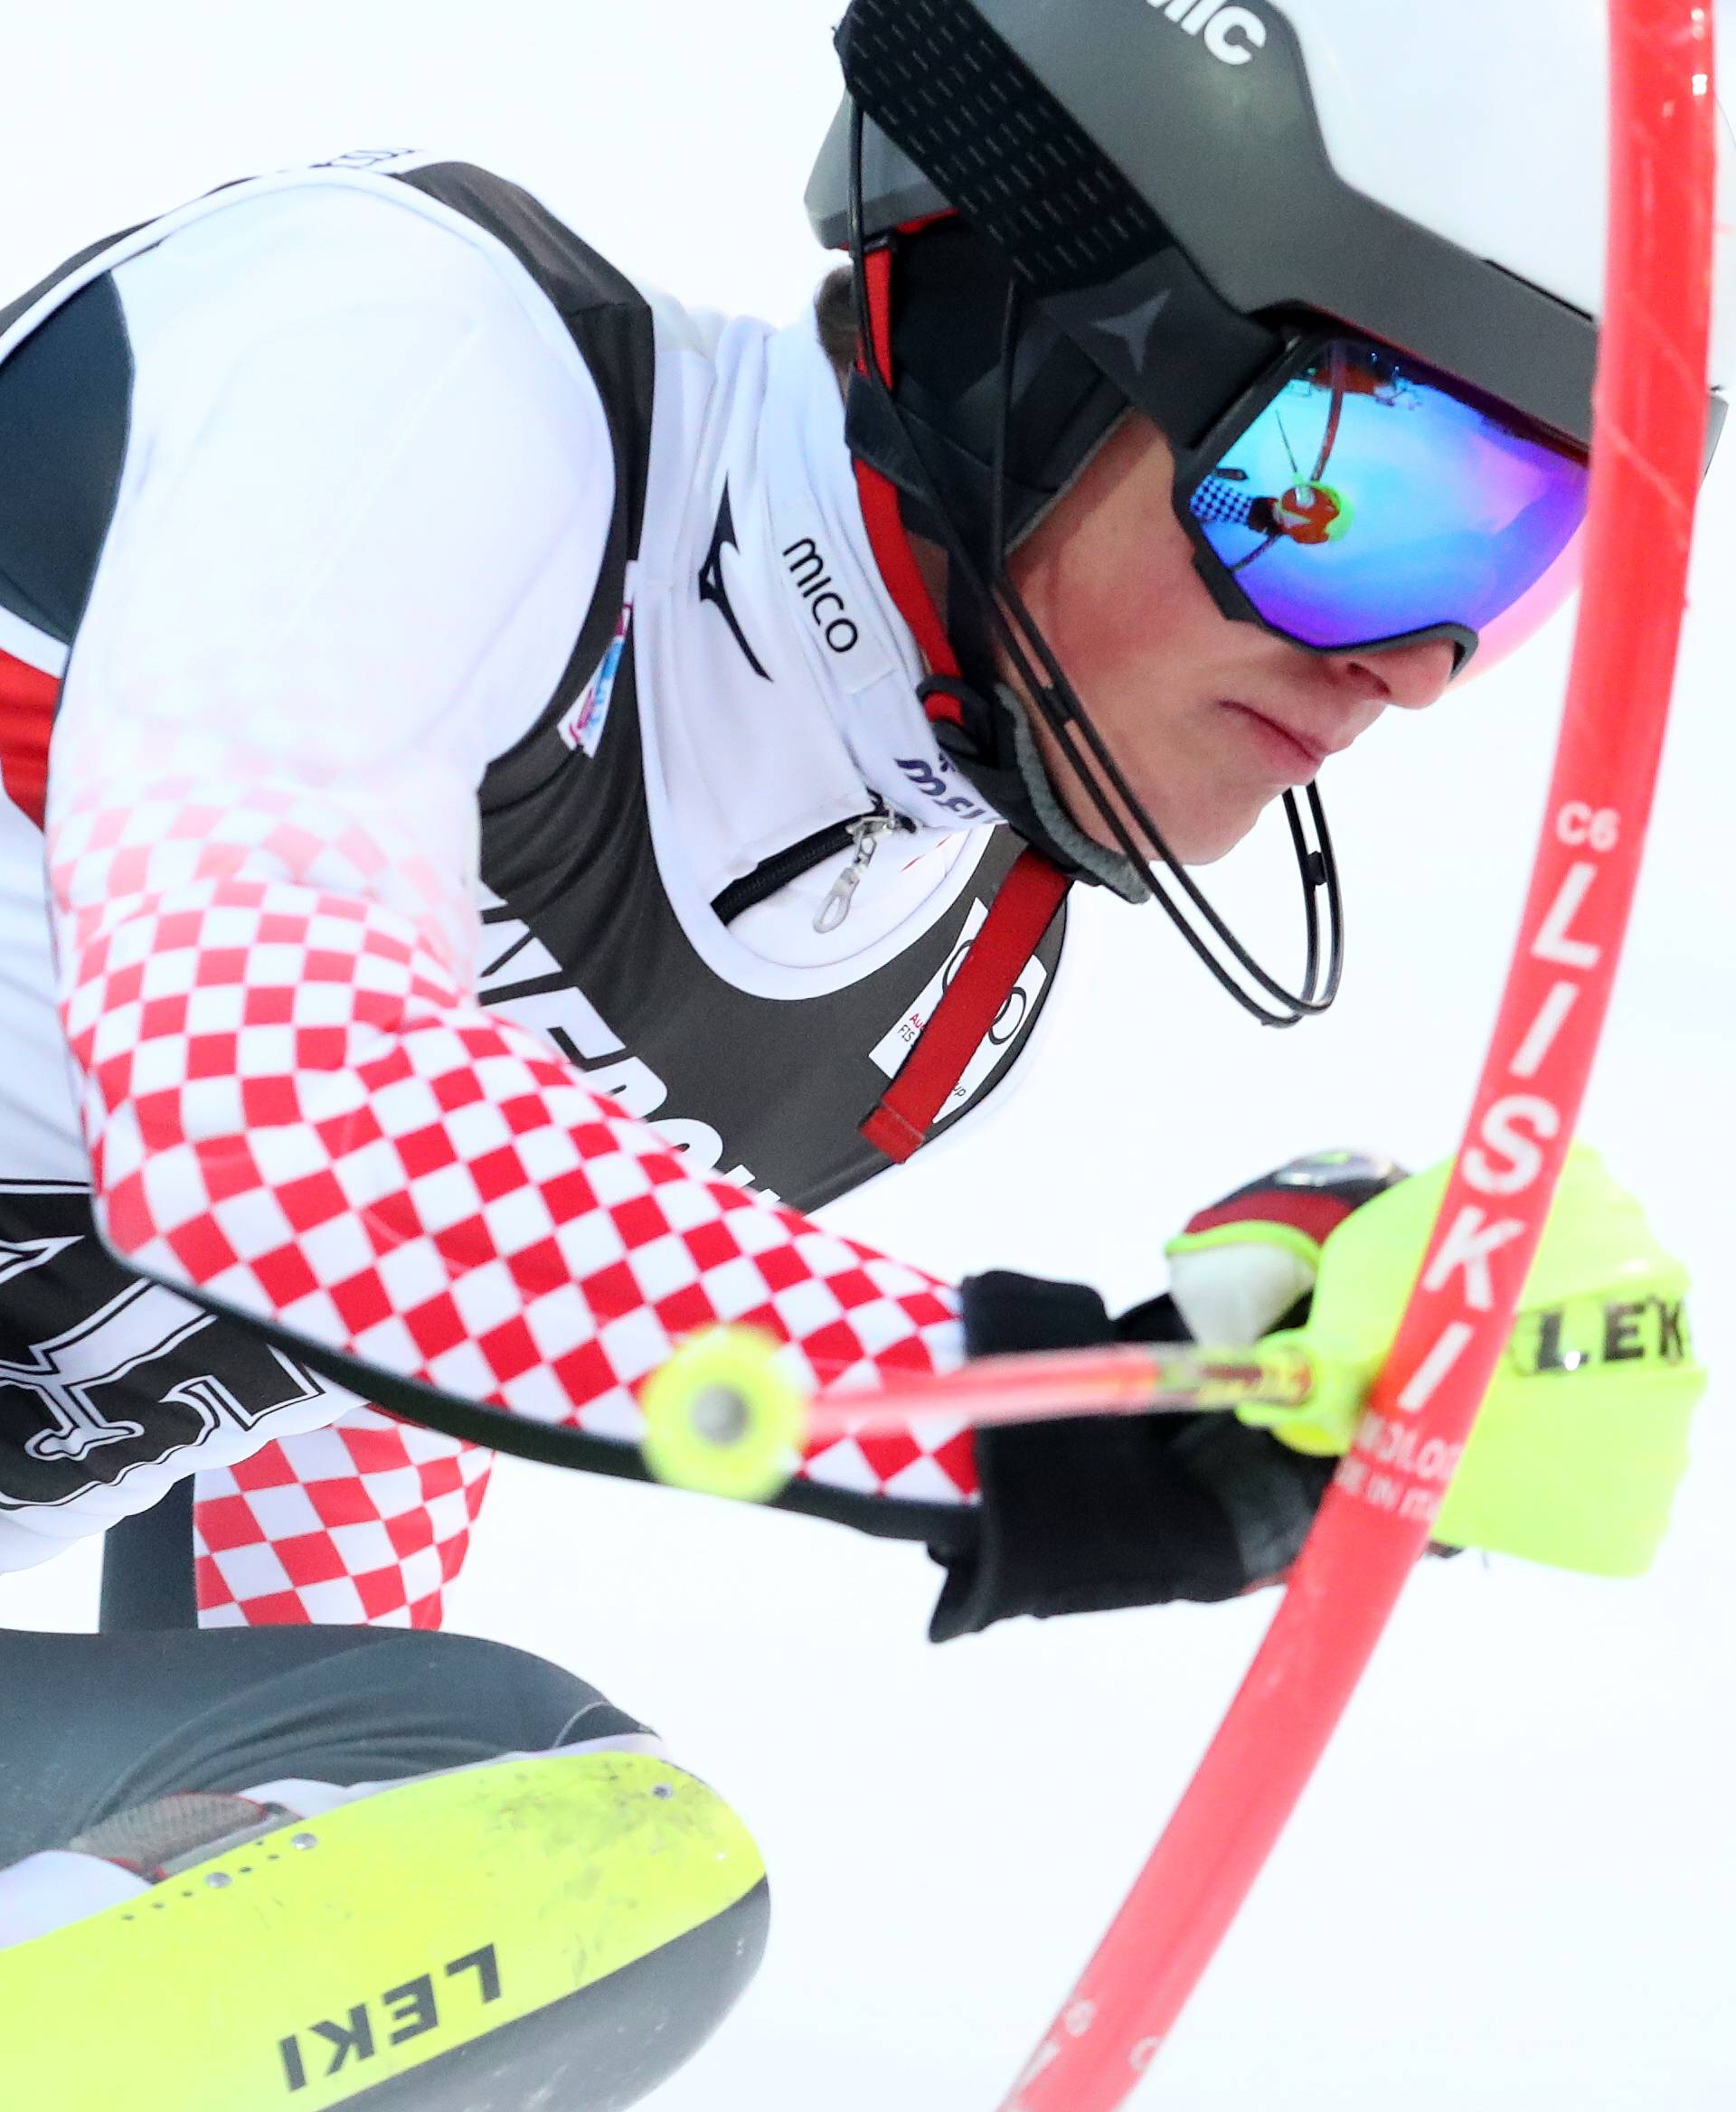 Zagreb: Hrvatski skijaÅ¡i u drugoj voÅ¾nji muÅ¡kog slaloma Snow Queen Trophy 2019.